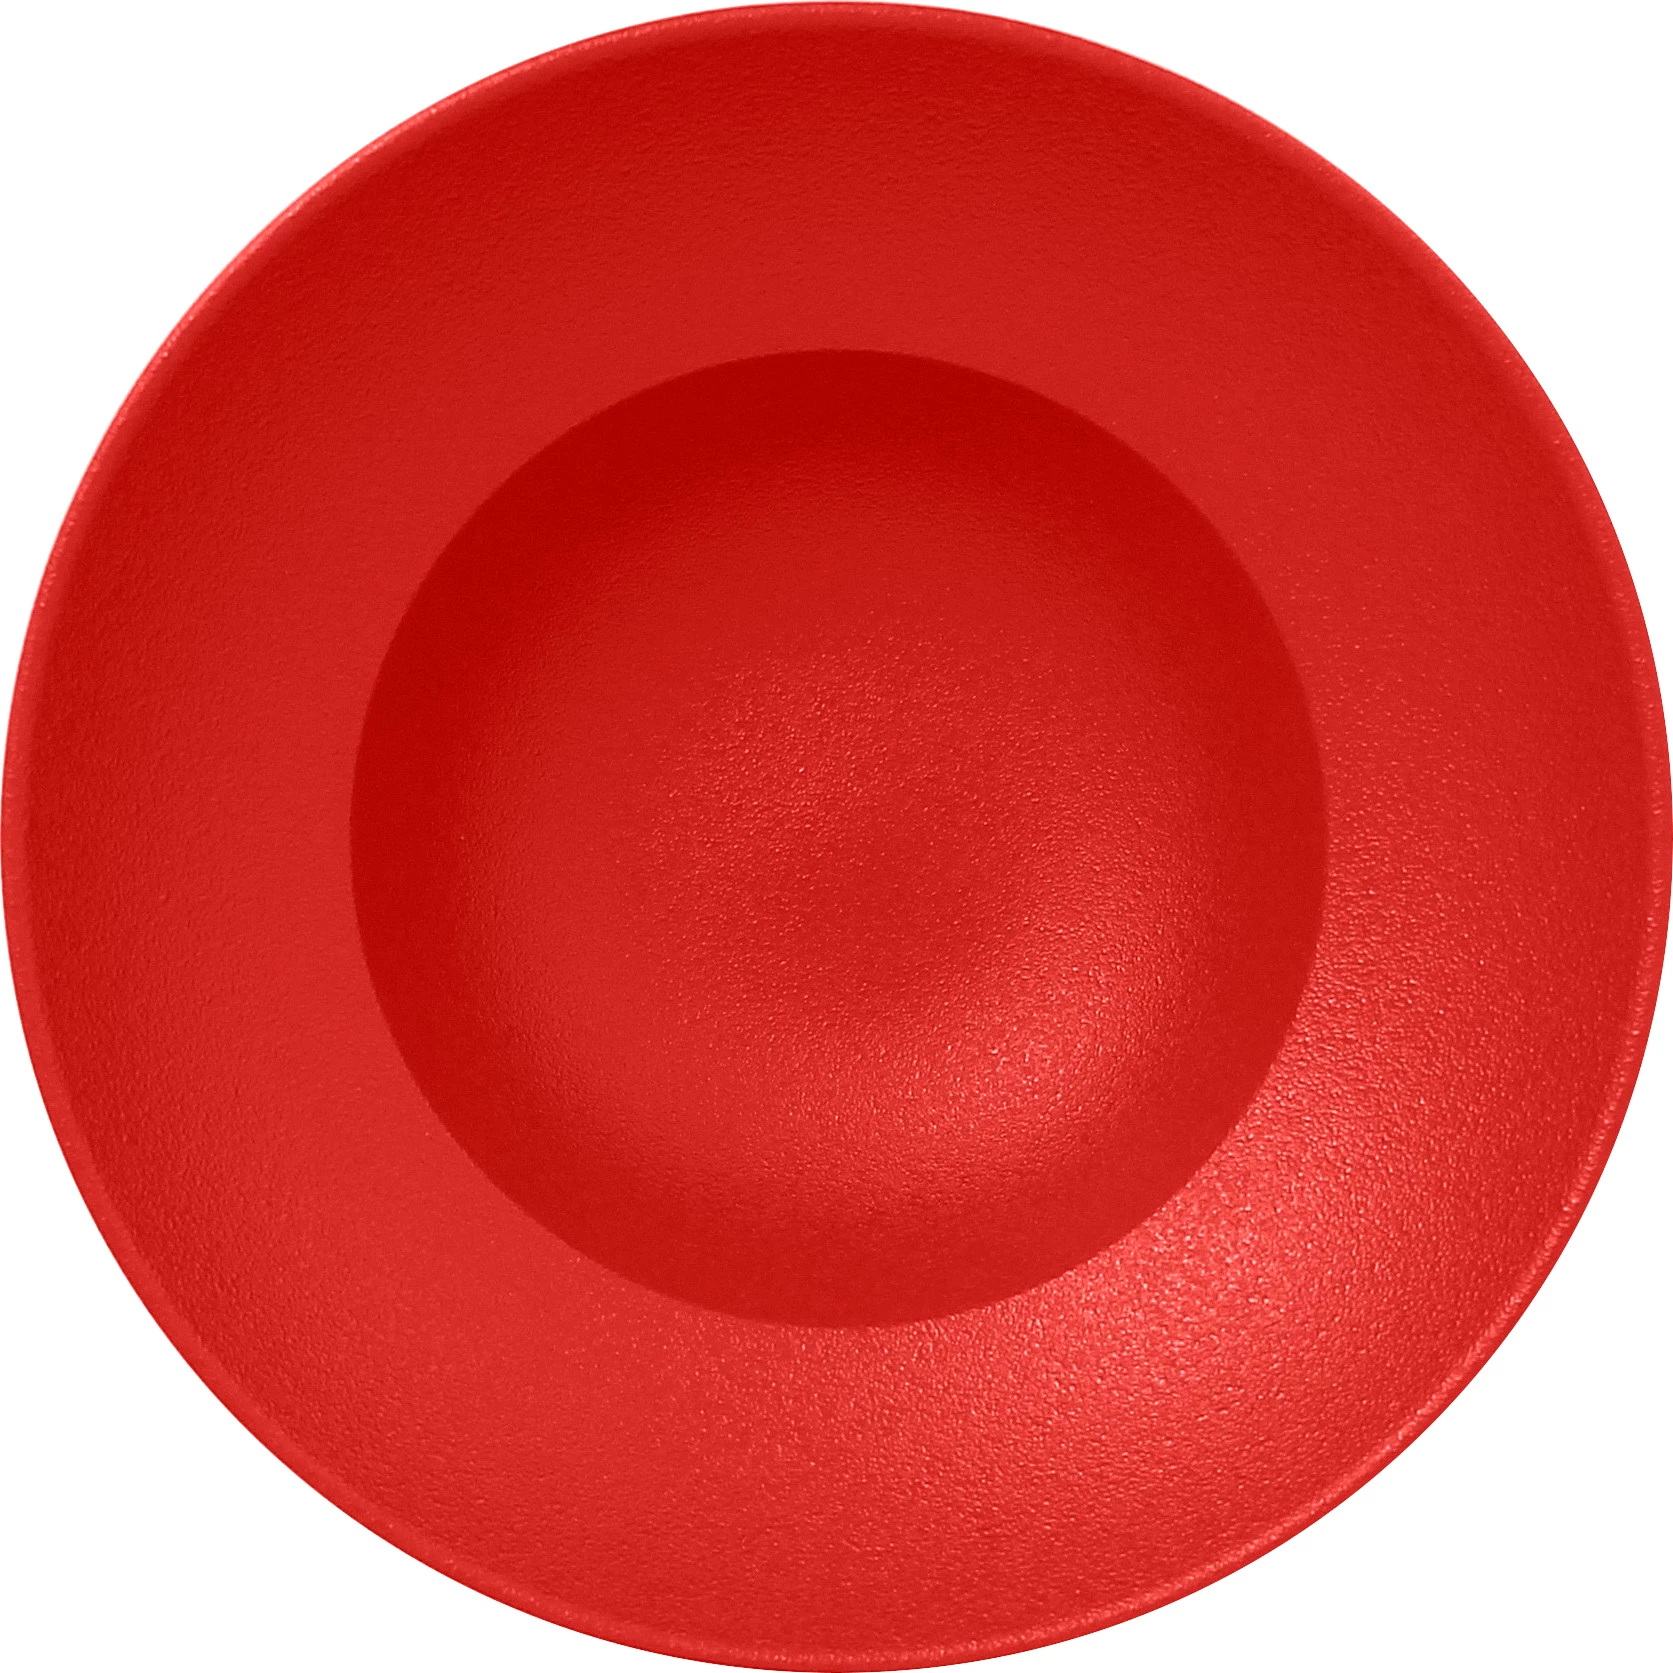 RAK Neofusion pastatallerken, rød, ø23 cm